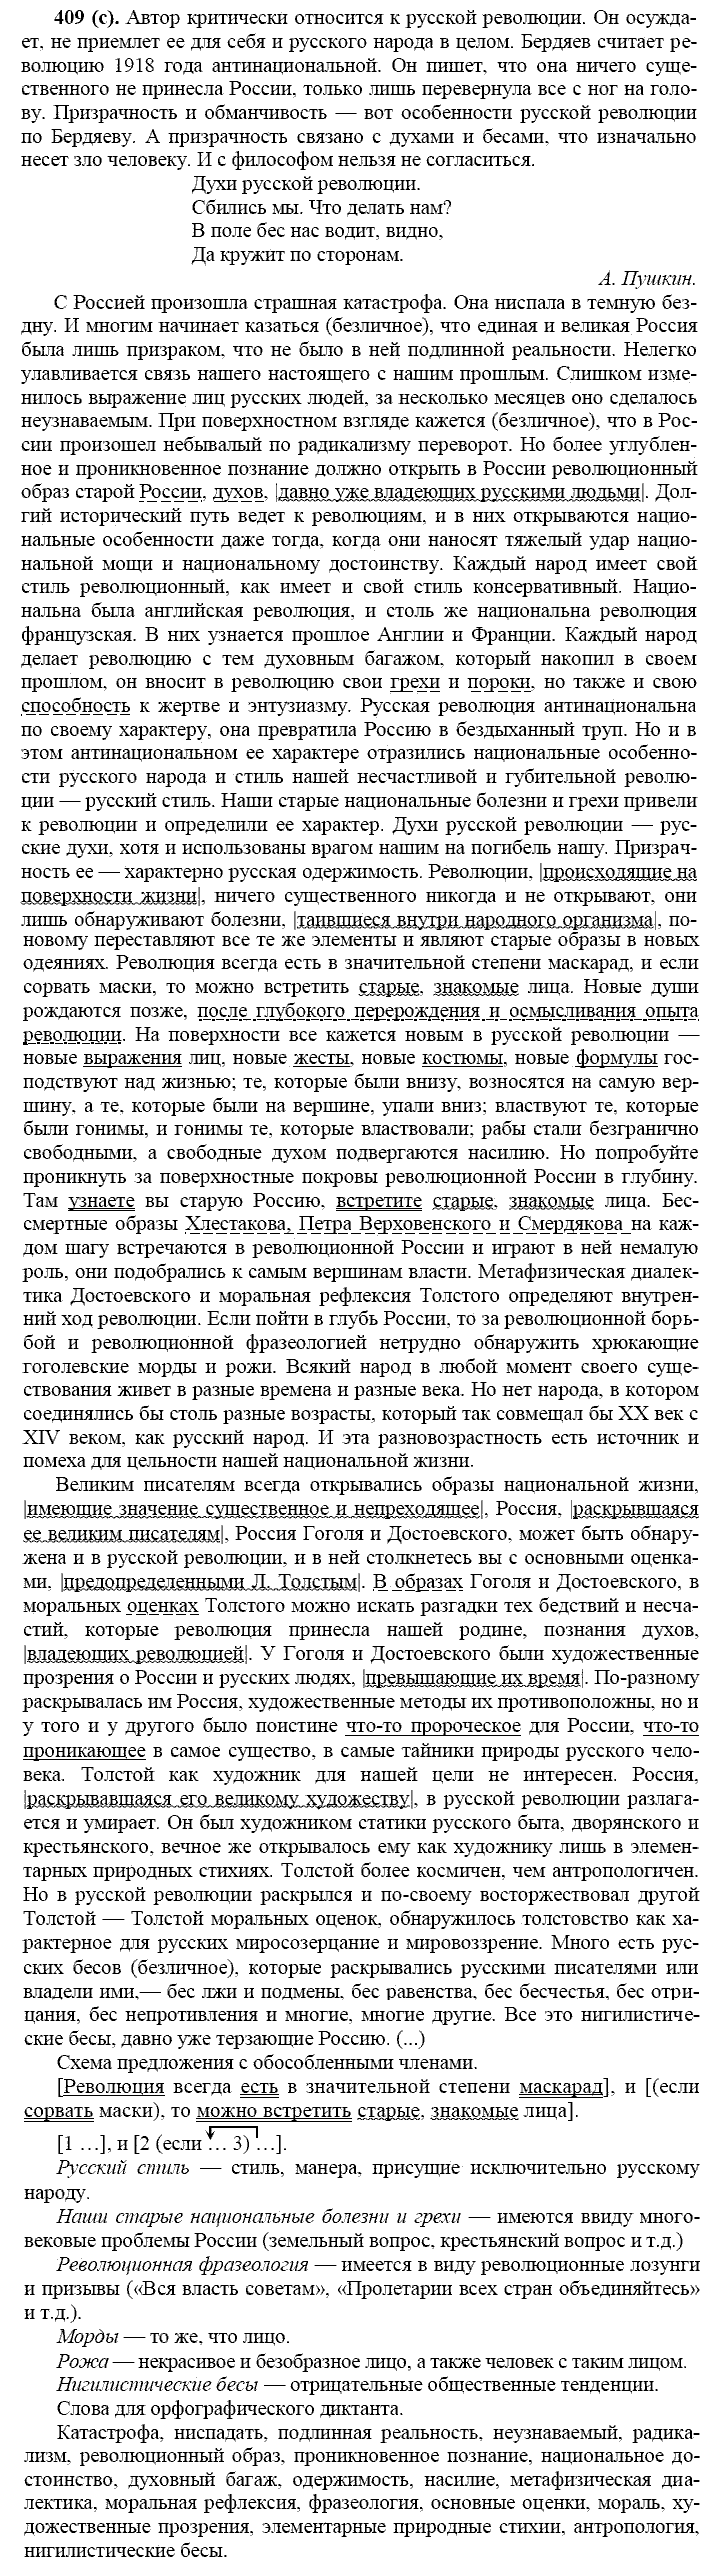 Русский язык, 11 класс, Власенков, Рыбченков, 2009-2014, задание: 409 (с)